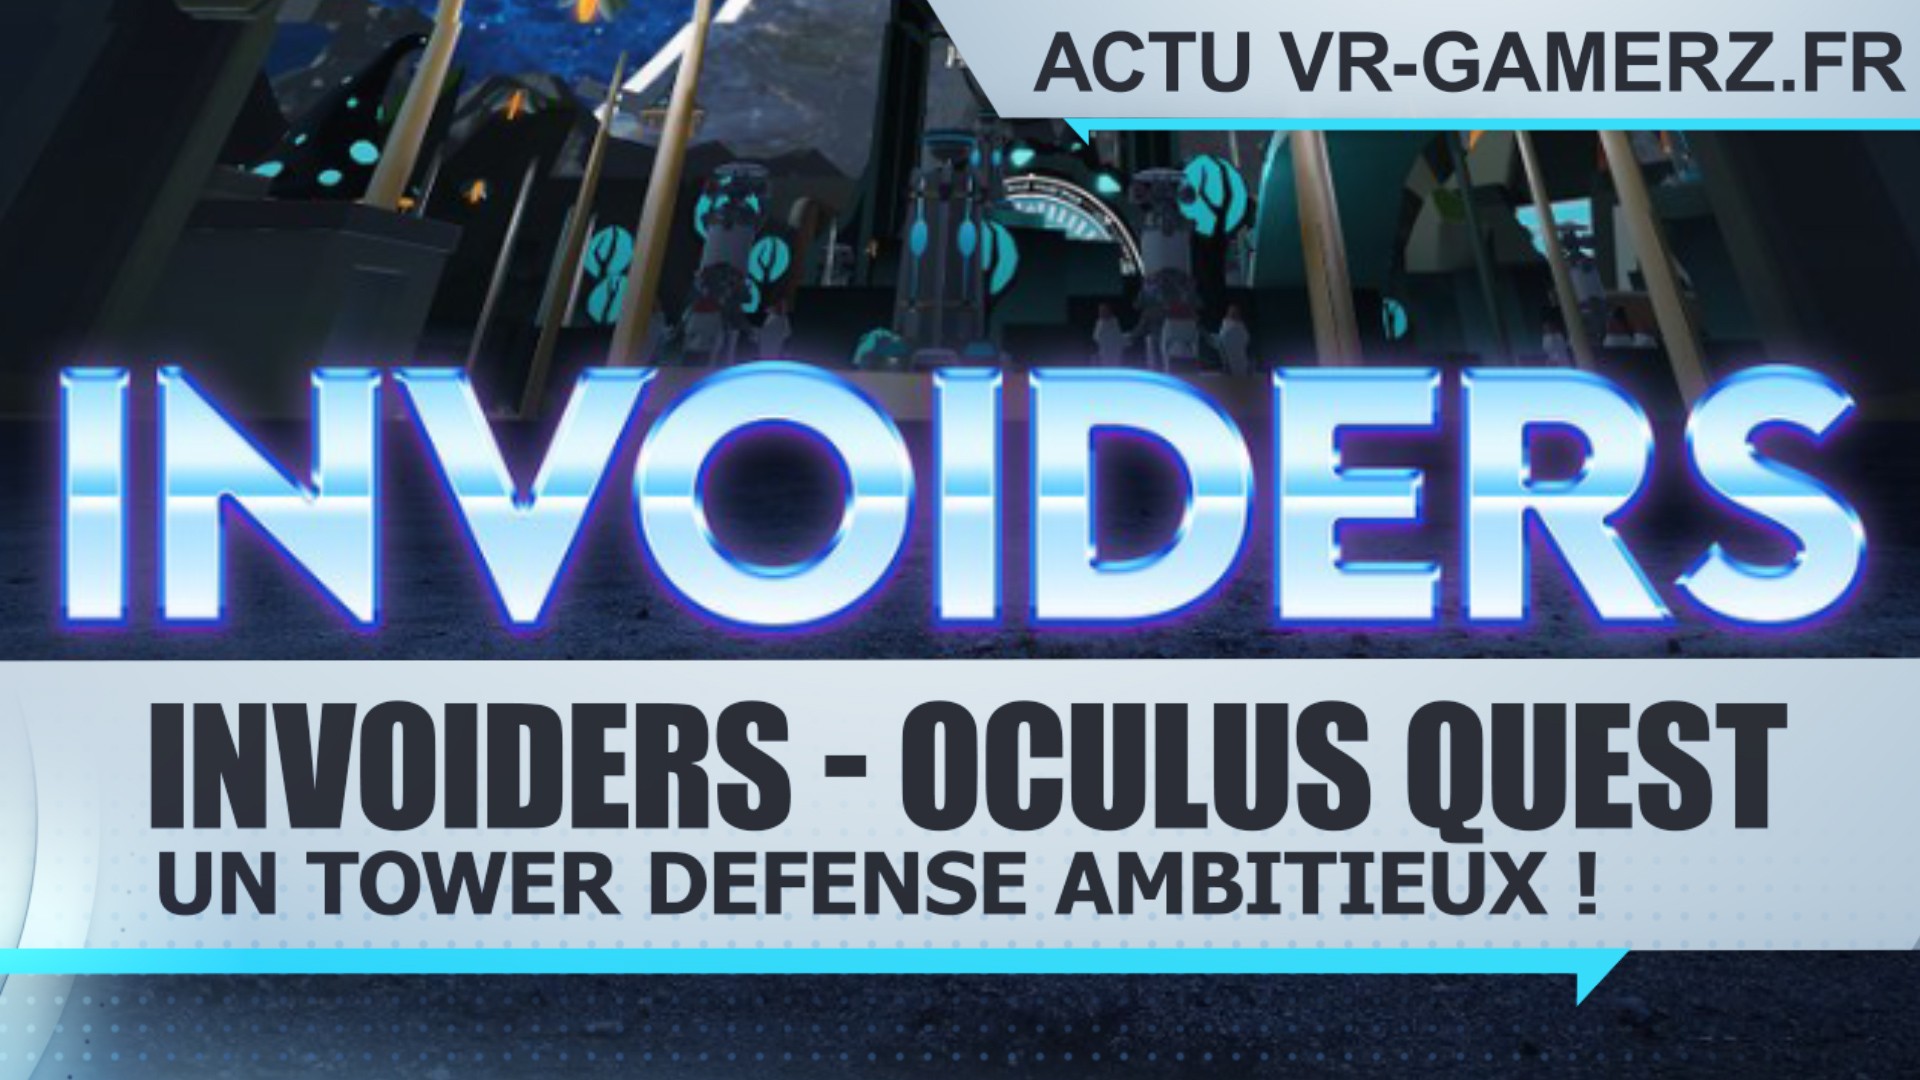 INVOIDERS sur Oculus quest : Un tower defense ambitieux !